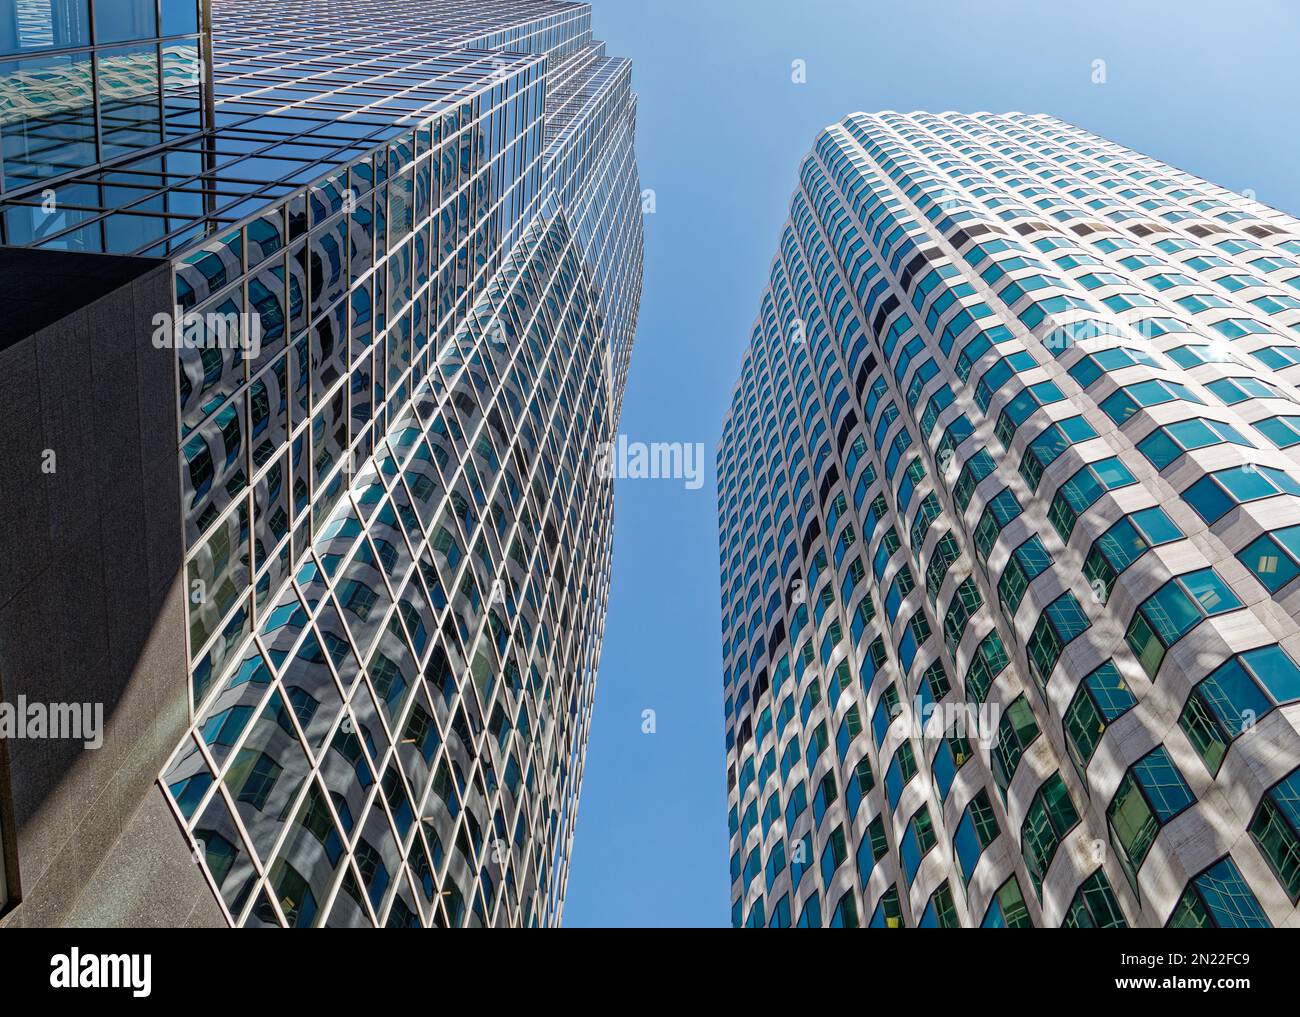 Distrito financiero de Boston: 100 High Street (izquierda) refleja todo a su alrededor en la cruda rejilla de vidrio blanco metal sobre negro. Foto de stock